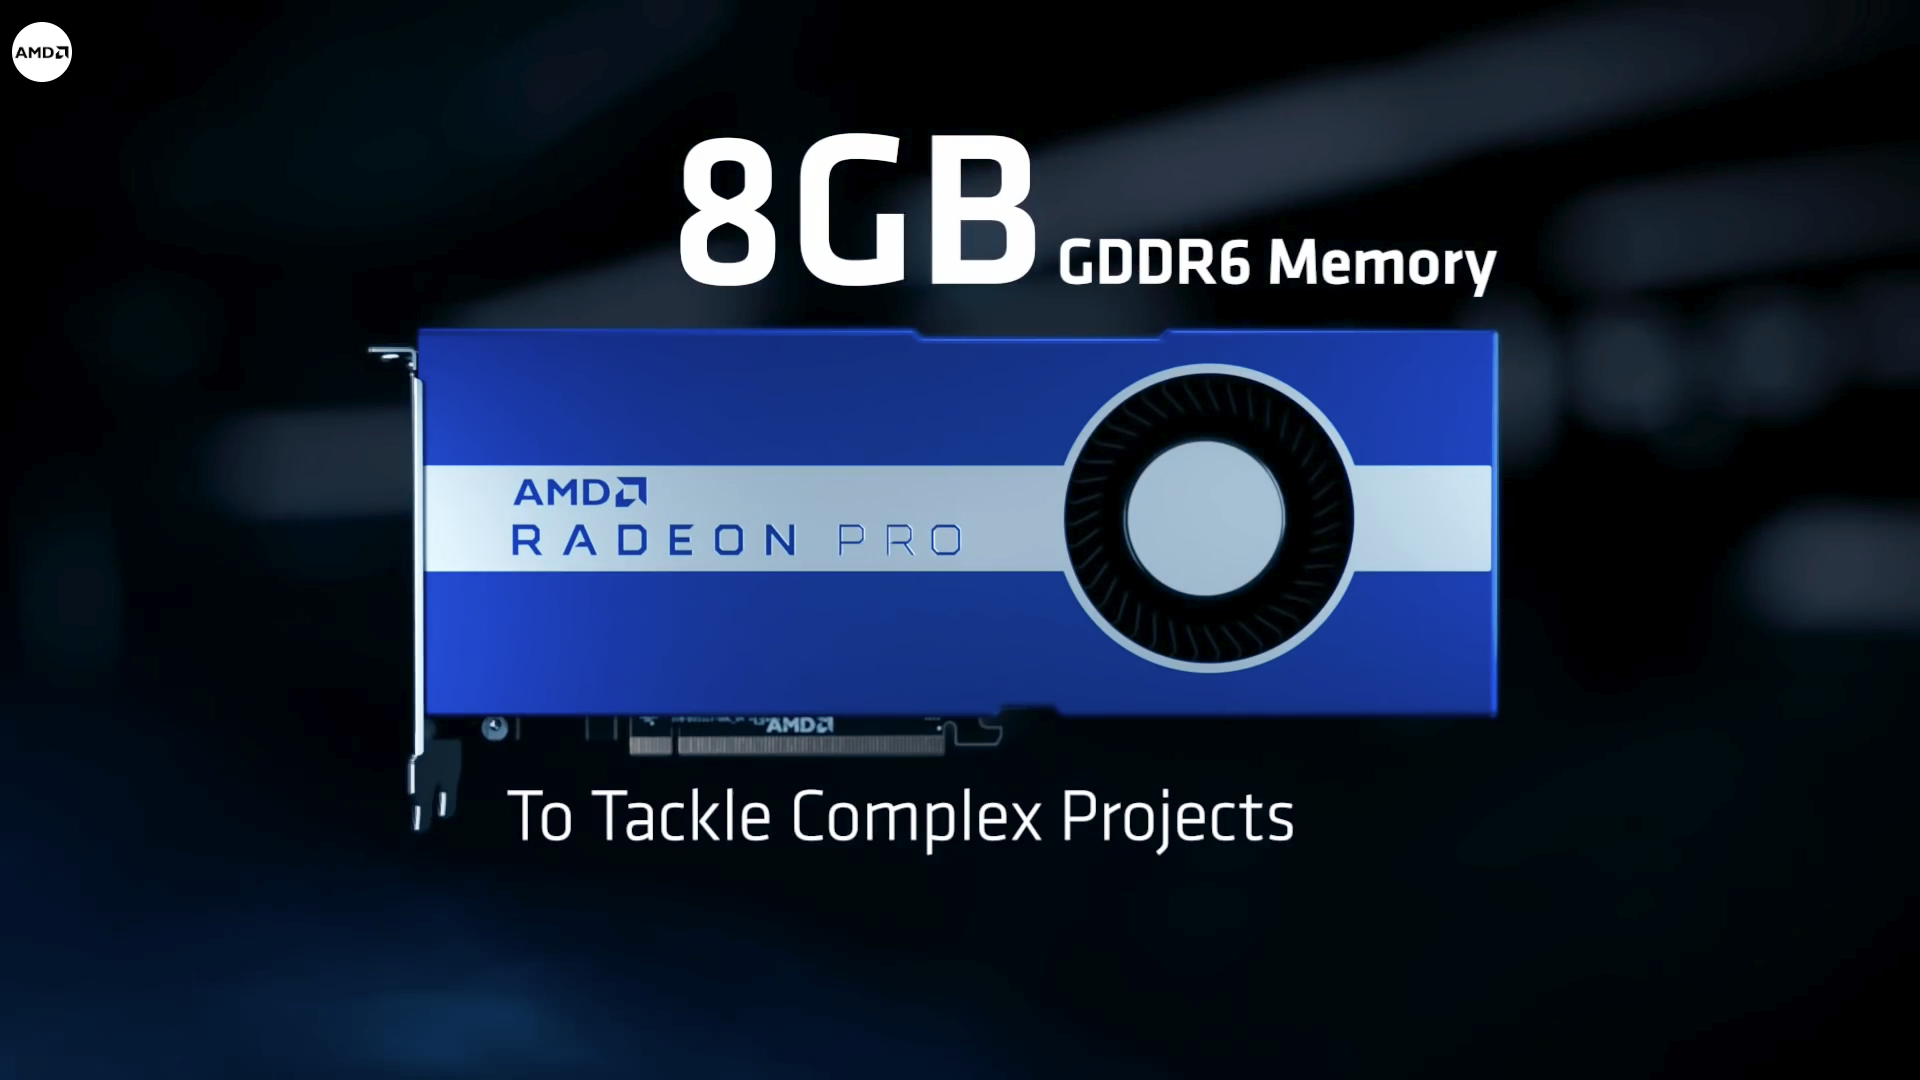 AMD ra mắt card đồ họa Workstation 7nm đầu tiên Radeon Pro W5700